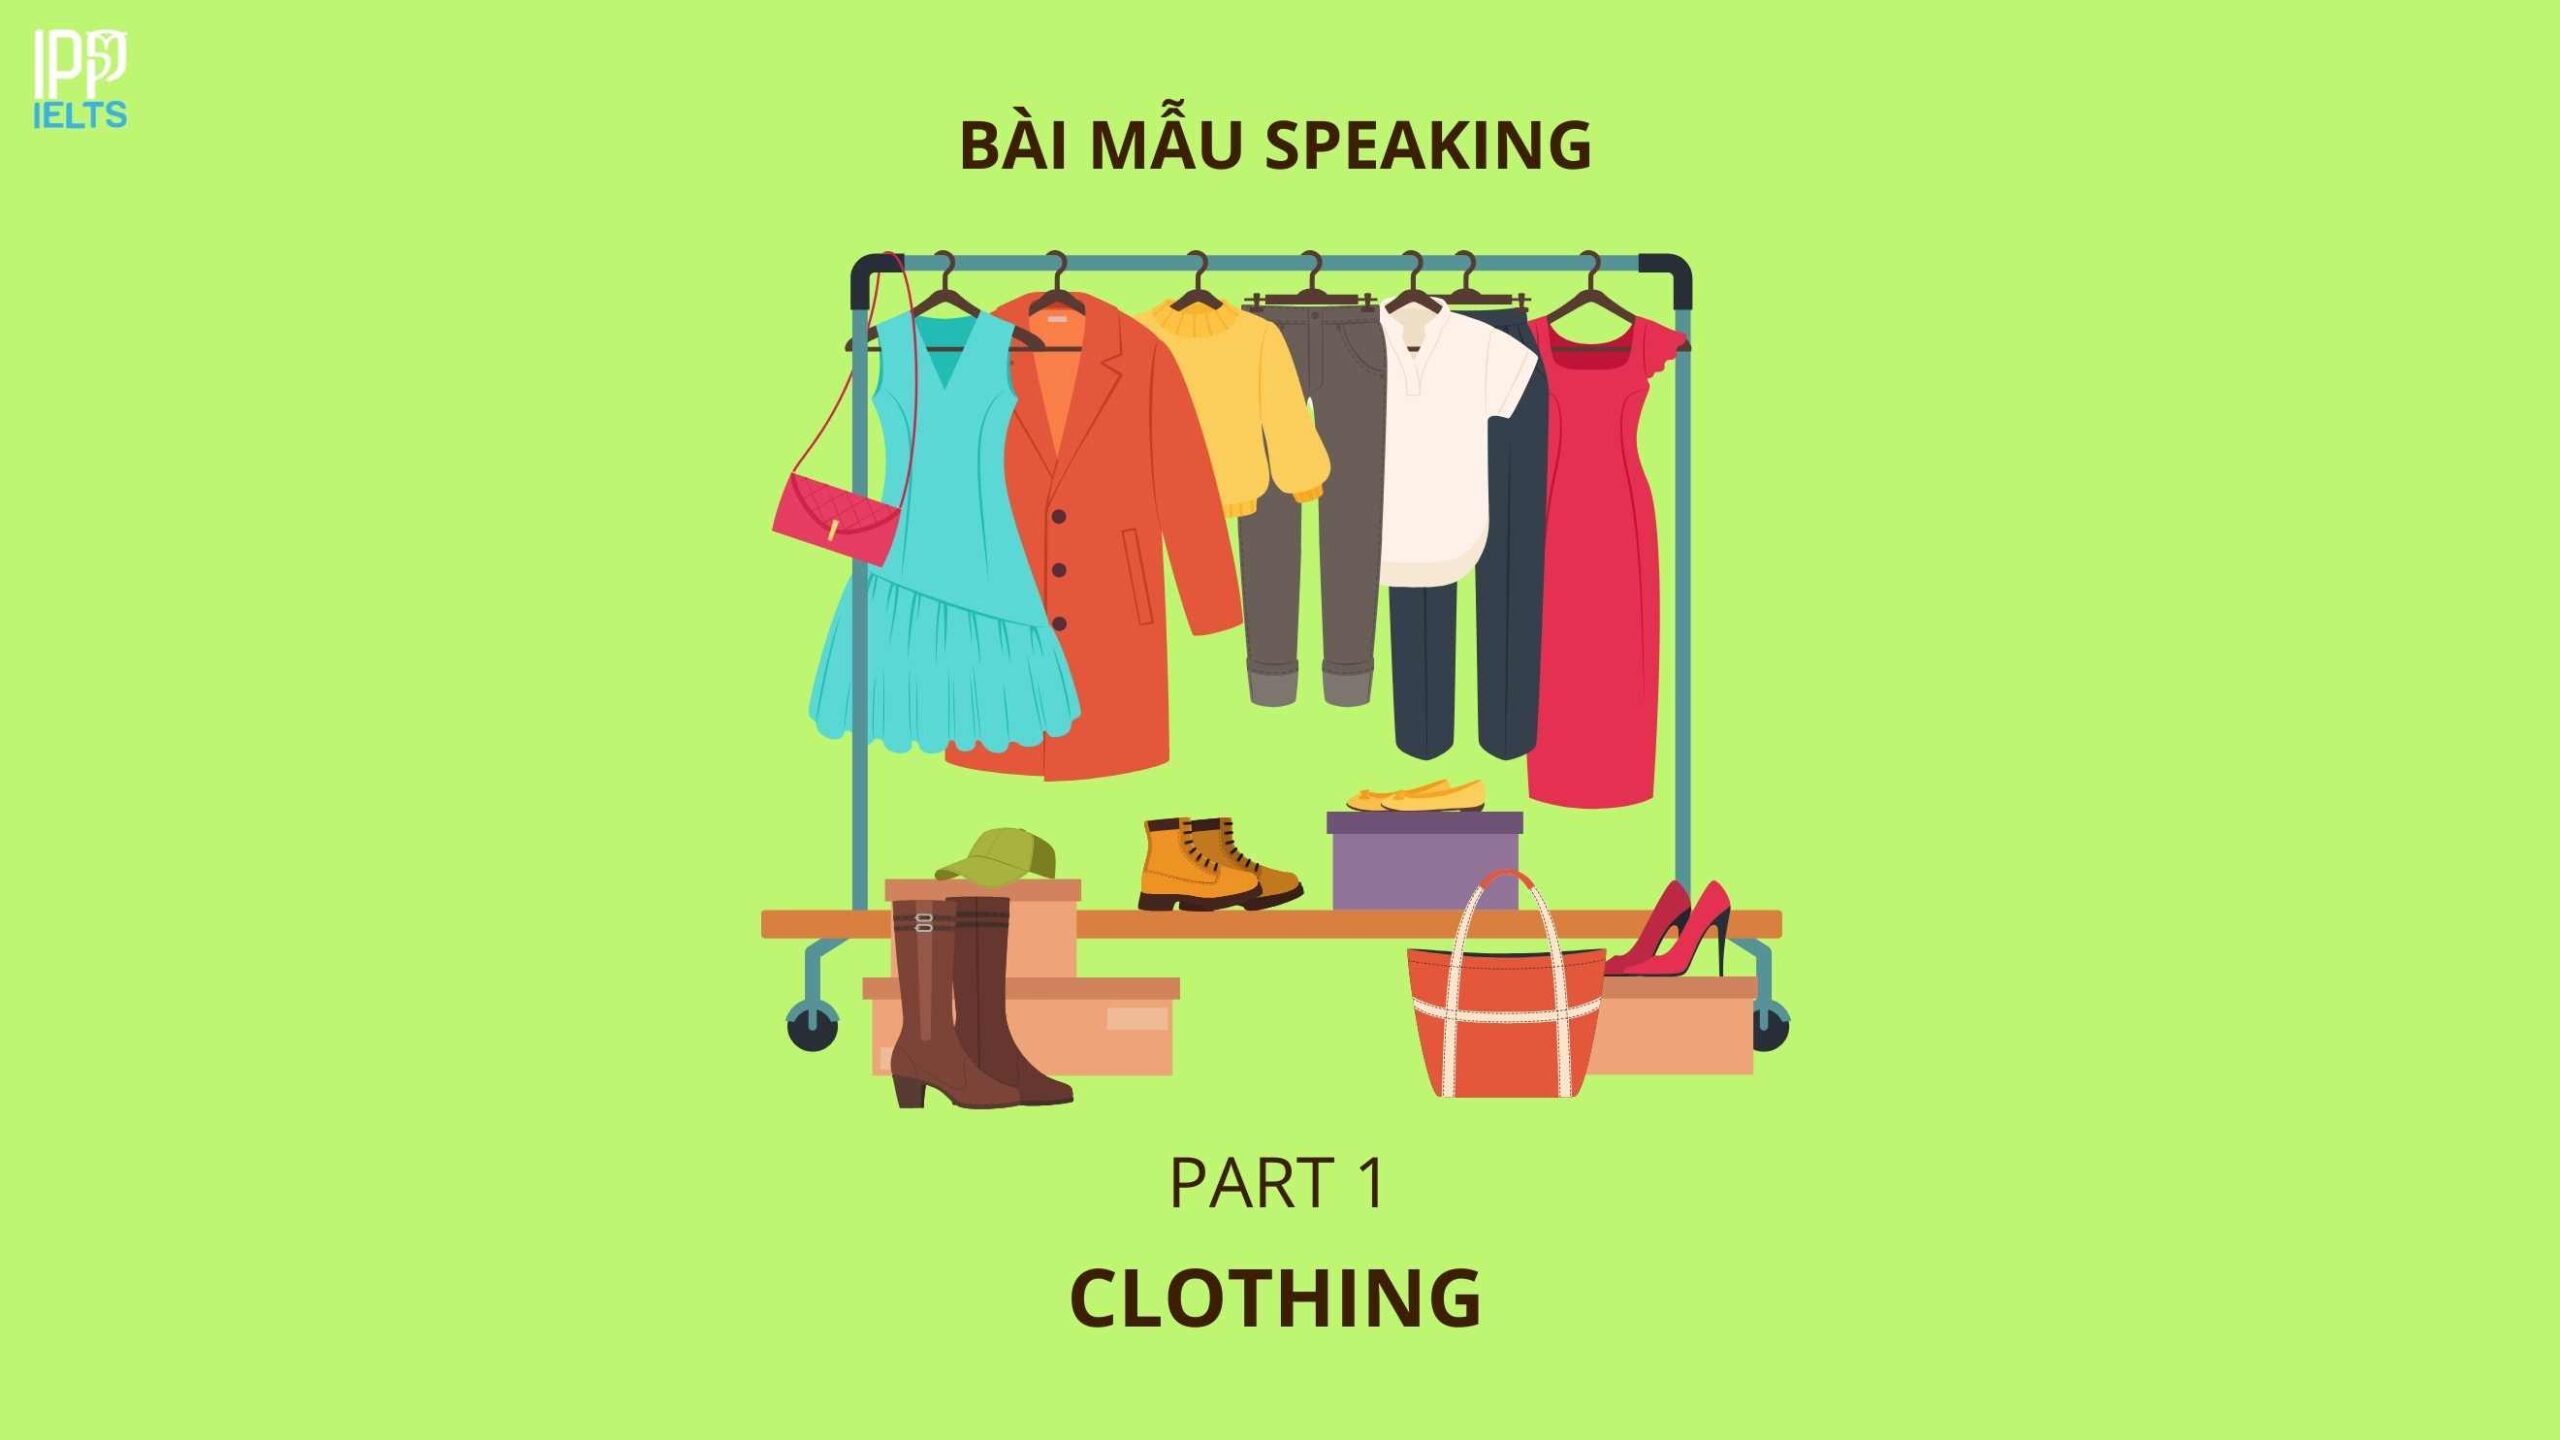 [SAMPLE SPEAKING] BÀI MẪU IELTS CHỦ ĐỀ CLOTHING